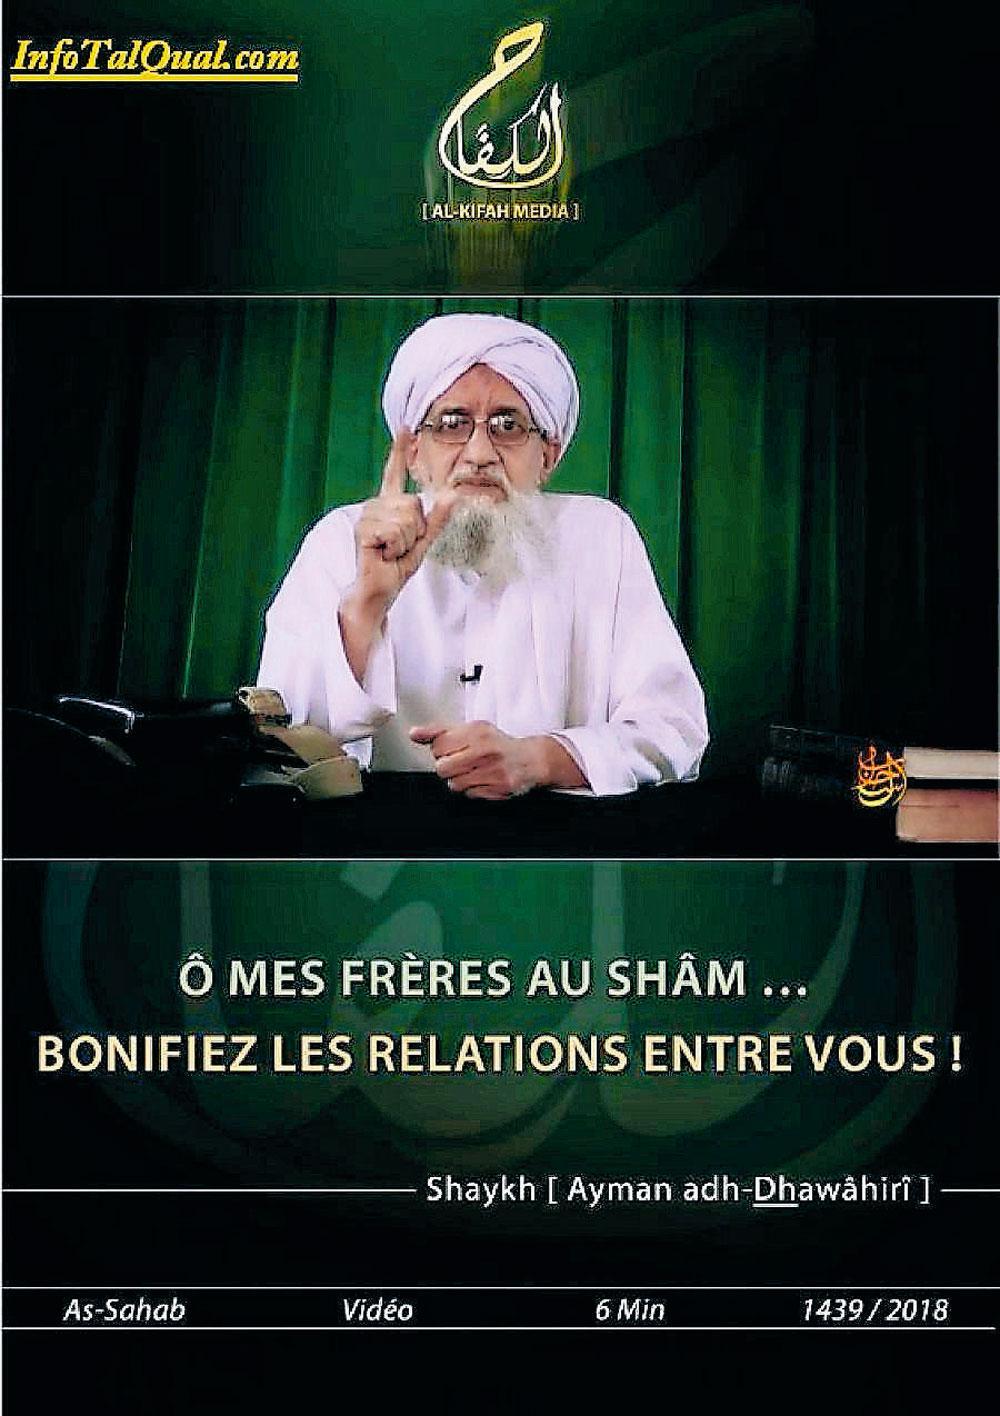 Al-Kifah Media, qui diffuse en français tous les communiqués d'Al-Qaeda : la propagande en ligne reste une arme majeure.